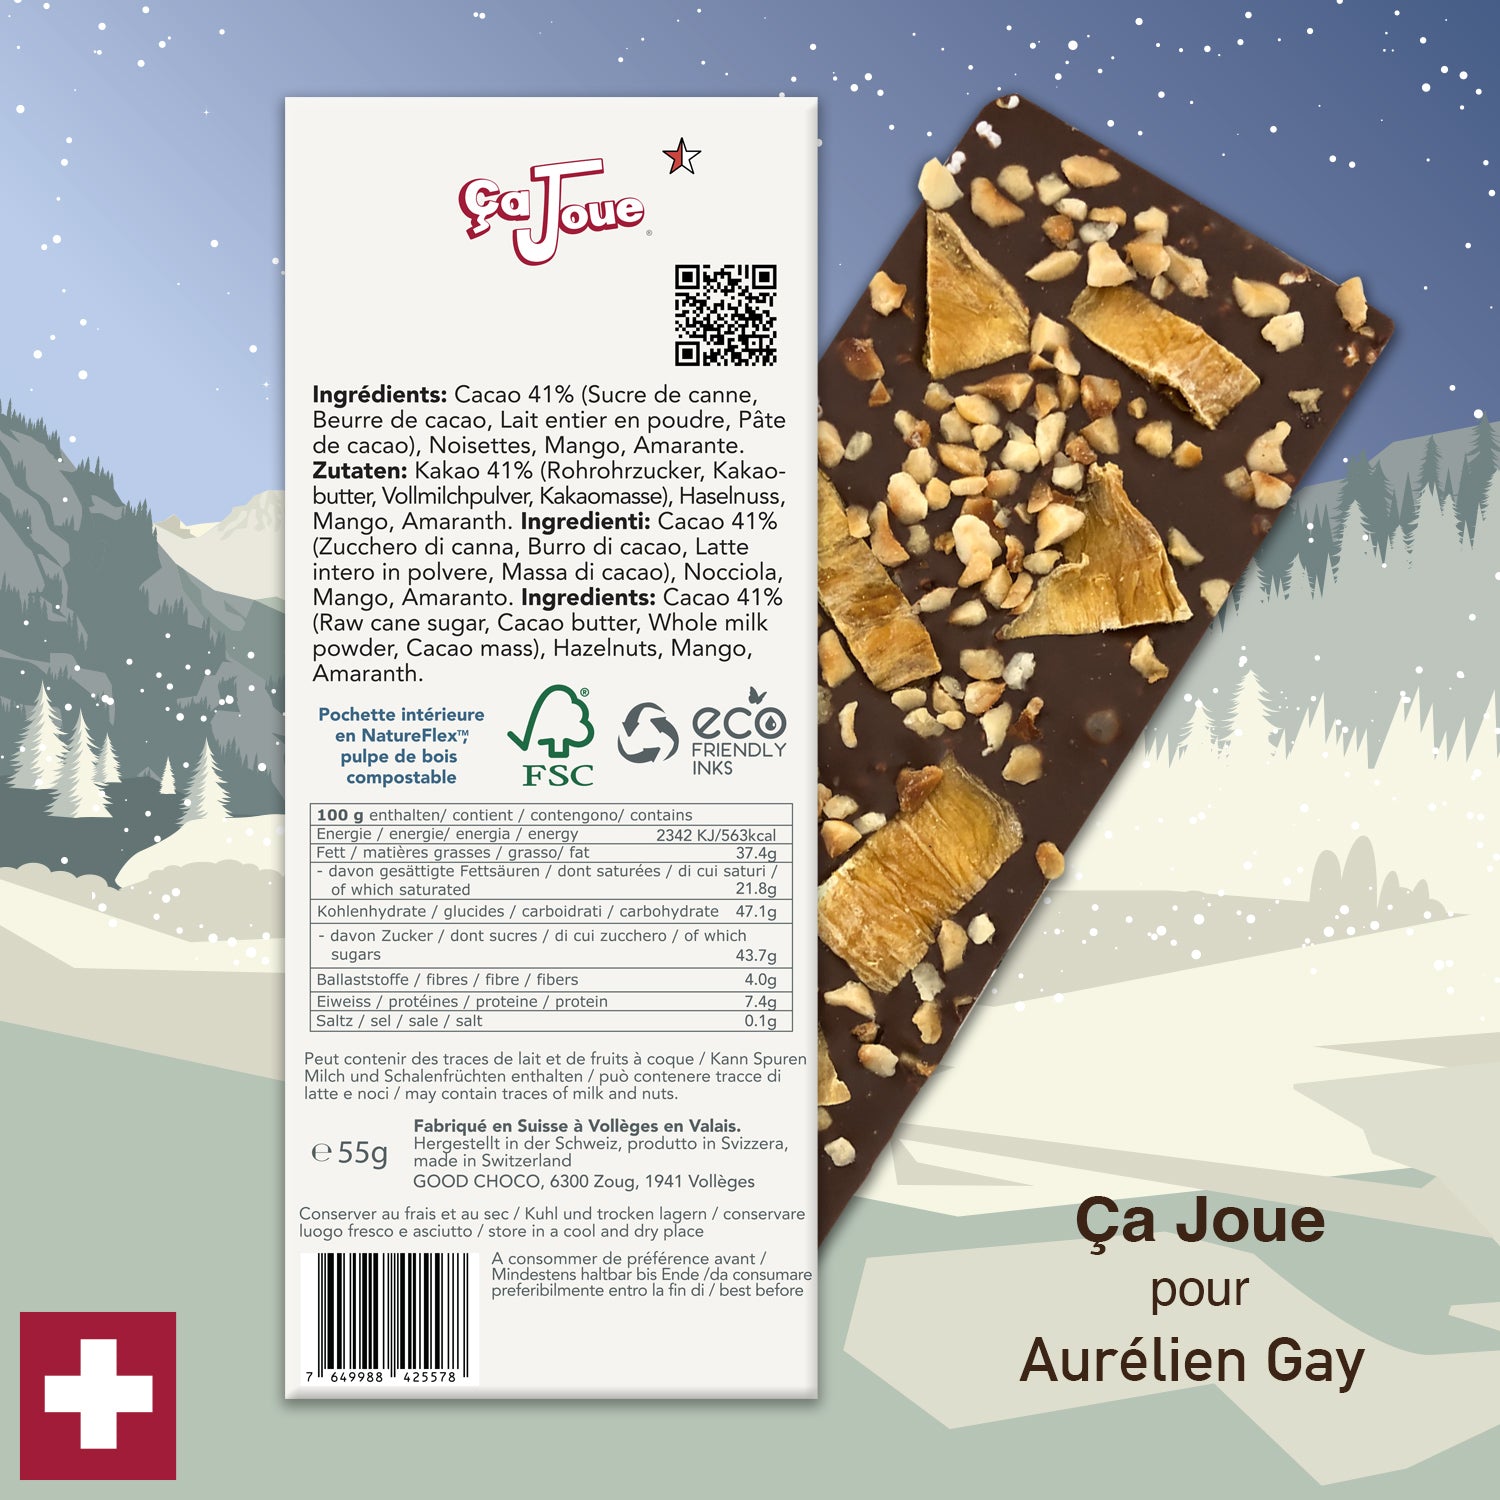 Ça Joue for Aurélien Gay (Ref-BL2) Milk Chocolate from Val de Bagnes